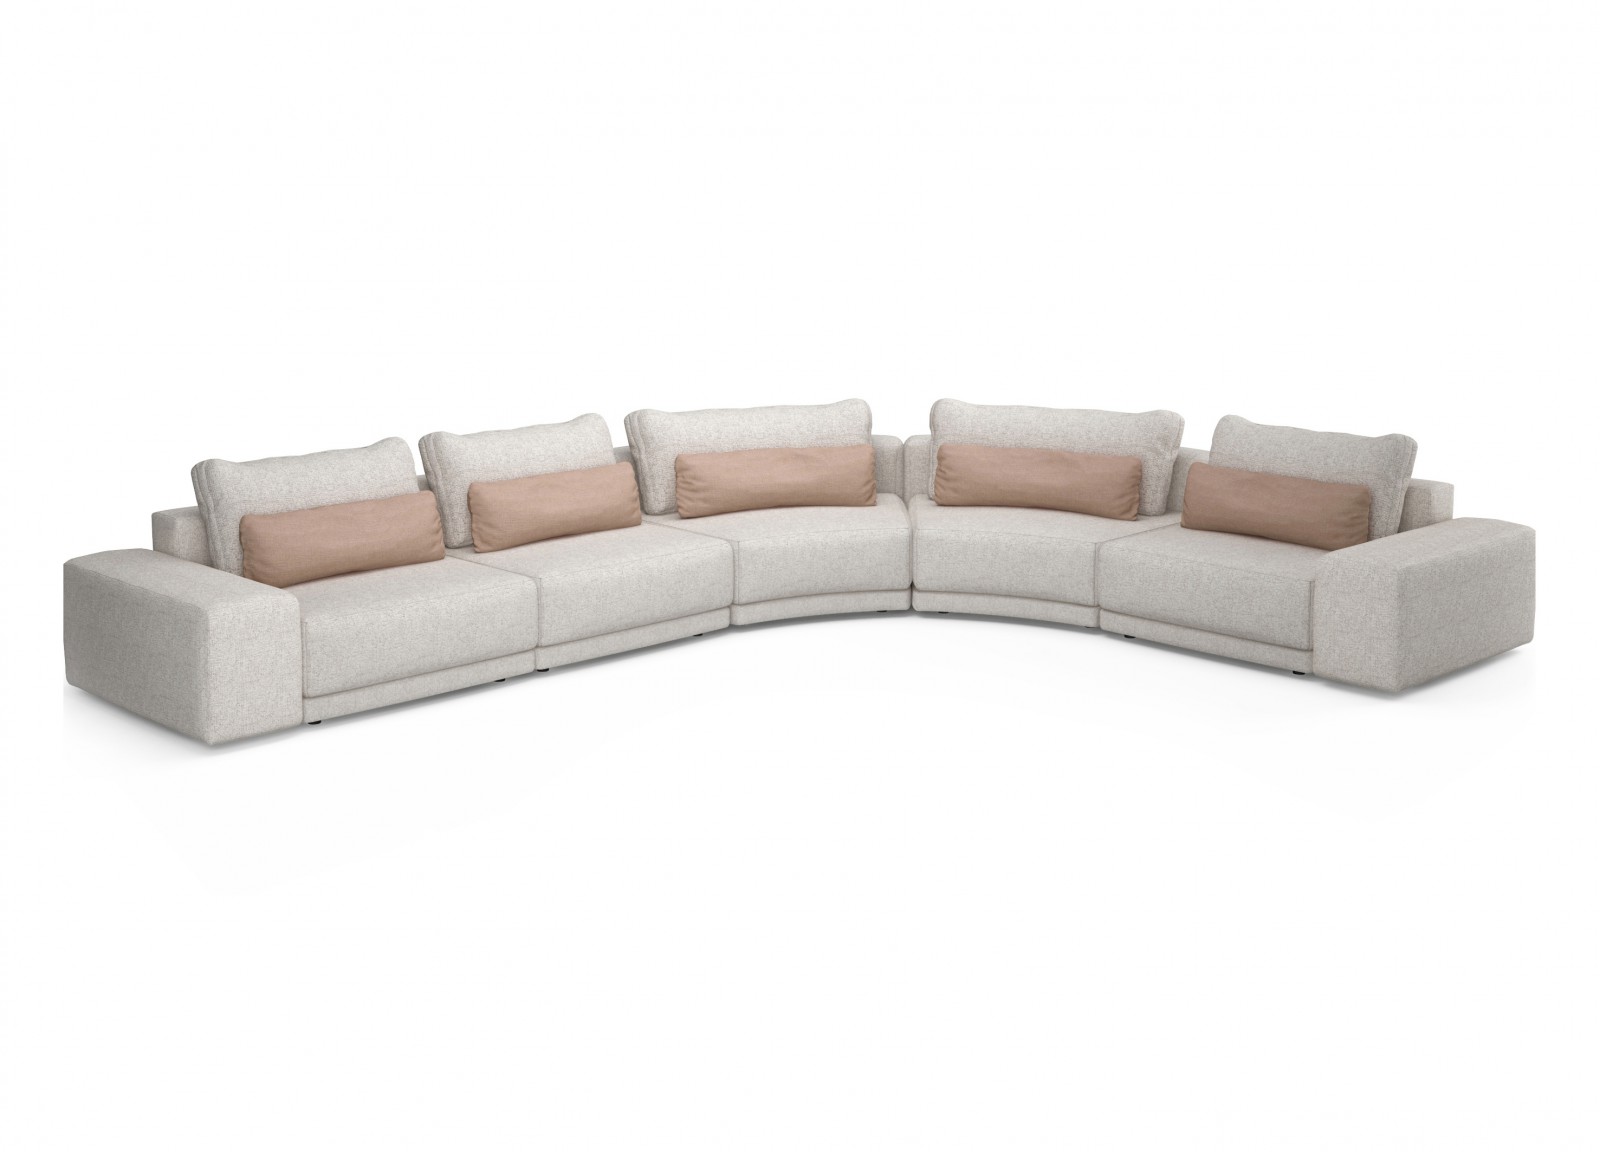 182" Modular Sofa